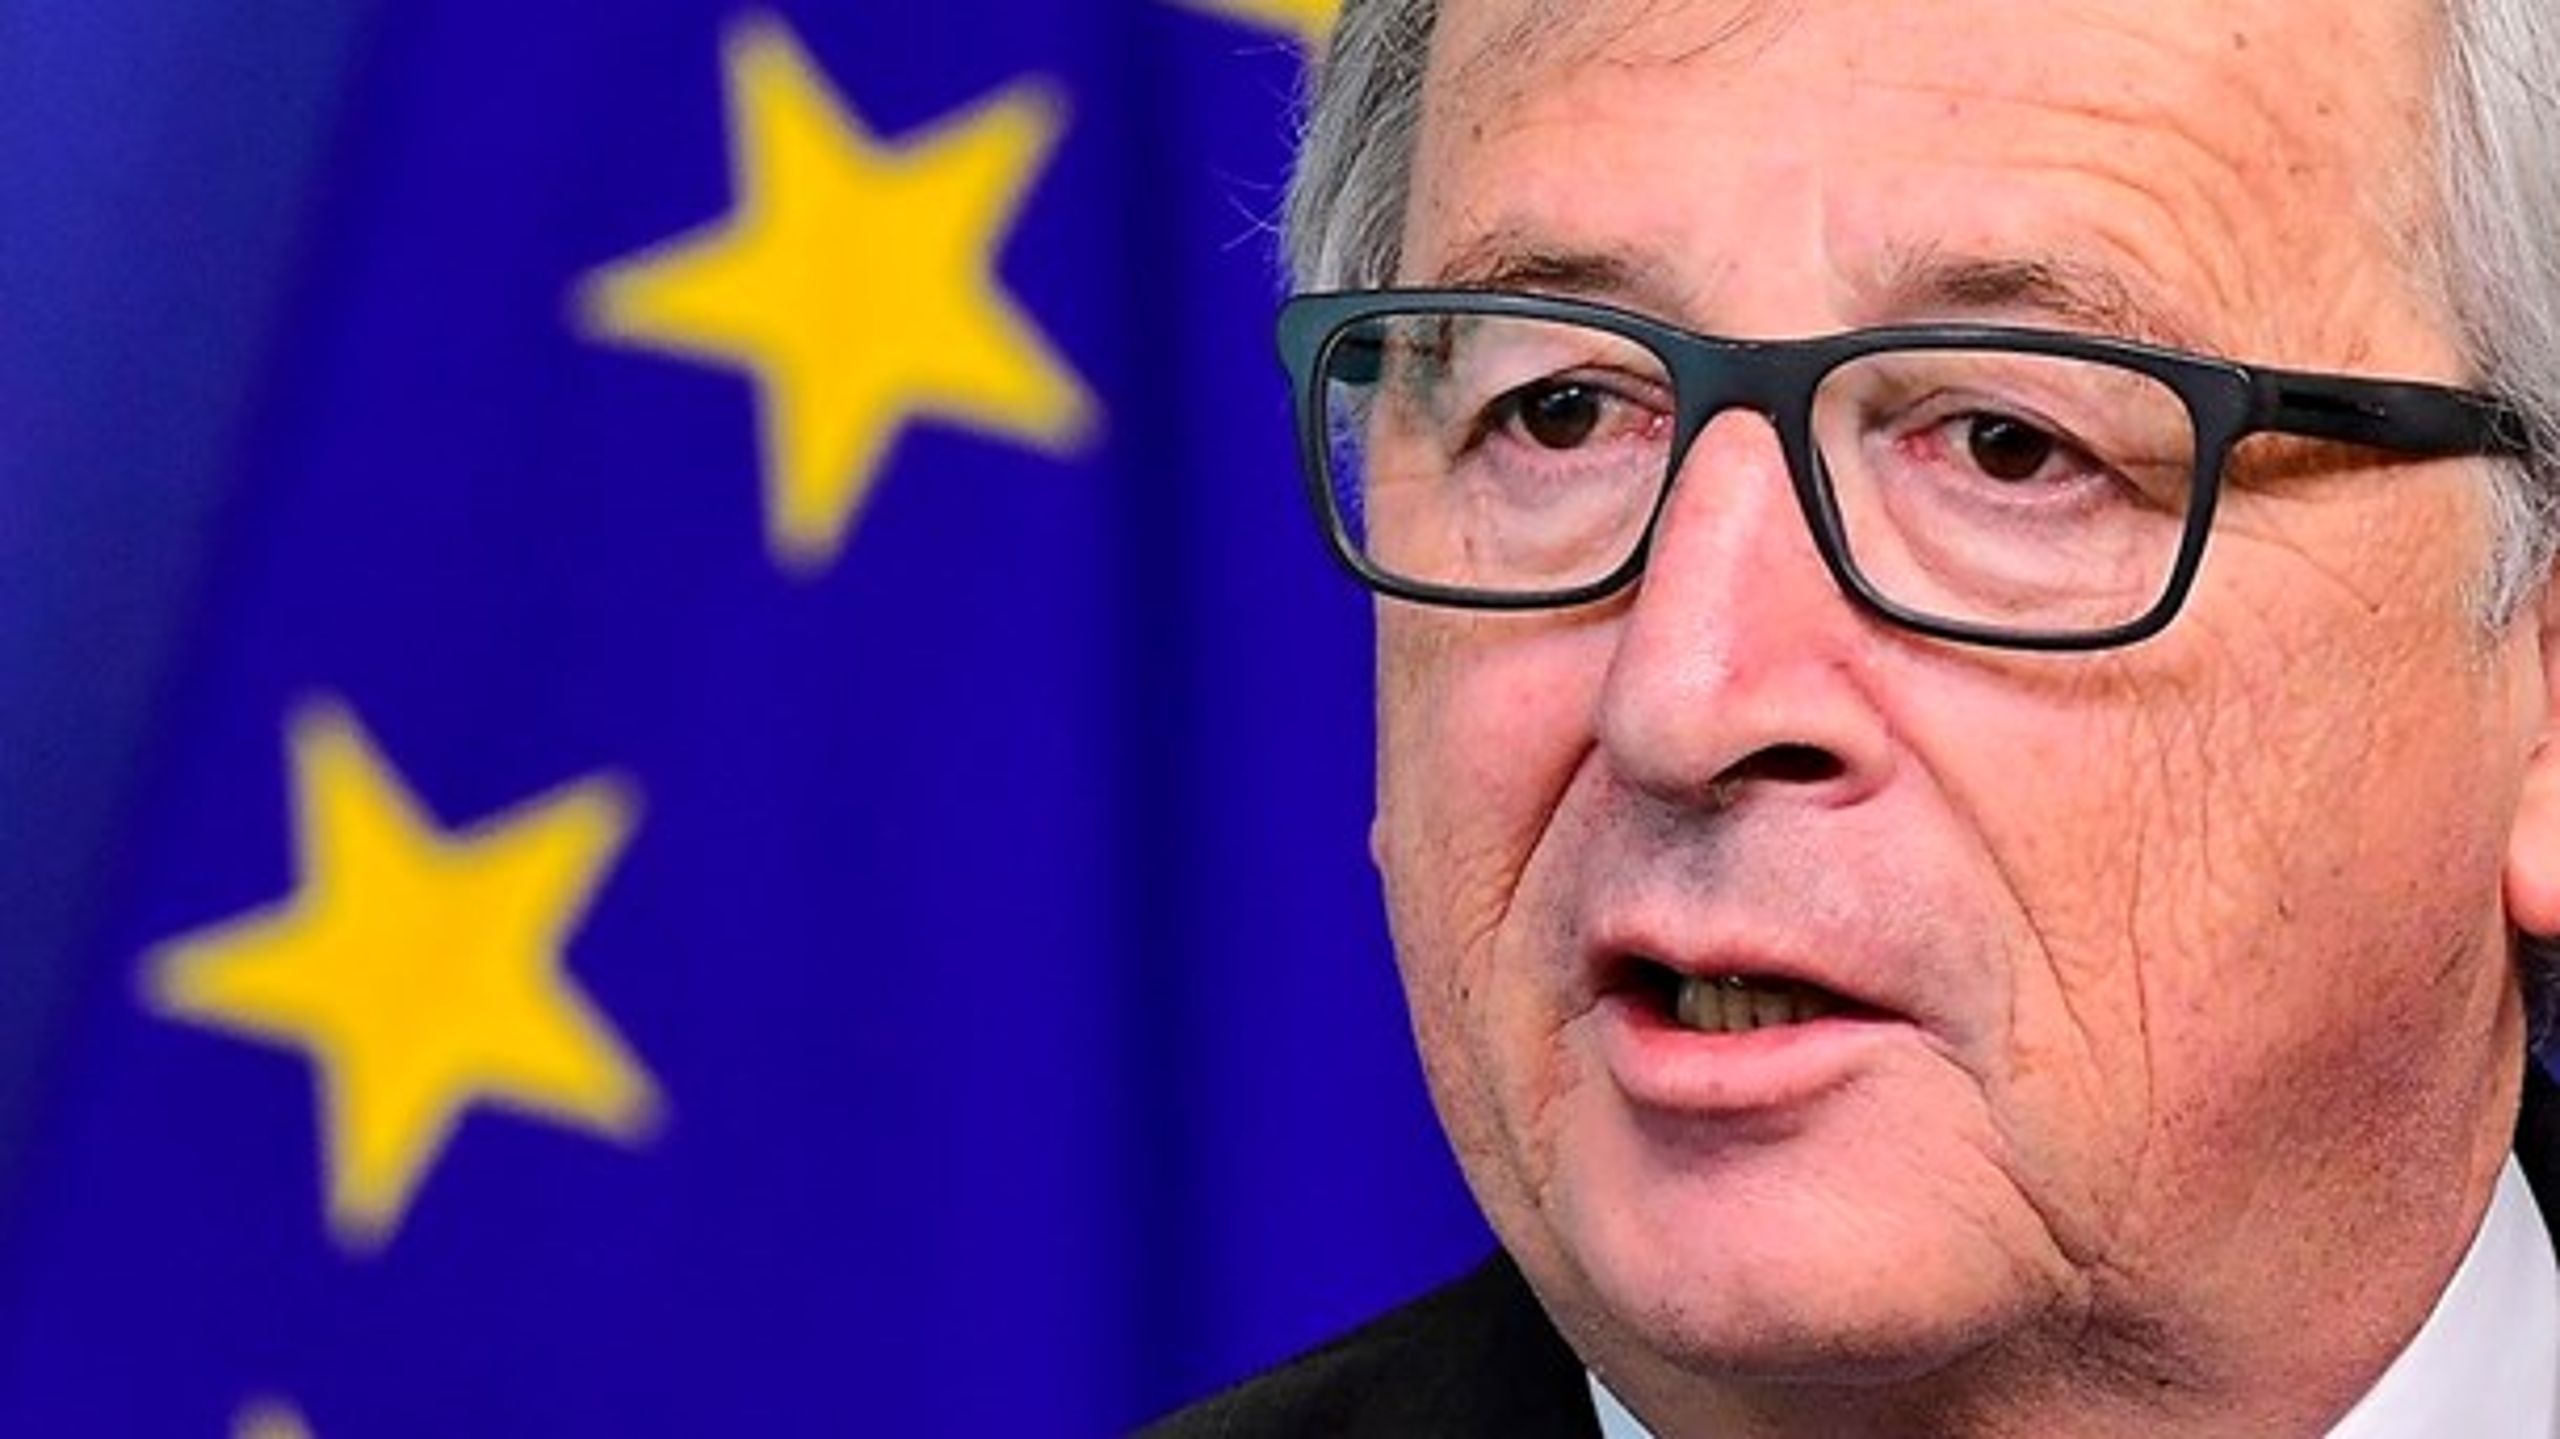 Det er på tide, vi gør klart, hvad EU kan og ikke kan udrette, siger EU-kommissionsformand Jean-Claude Juncker.